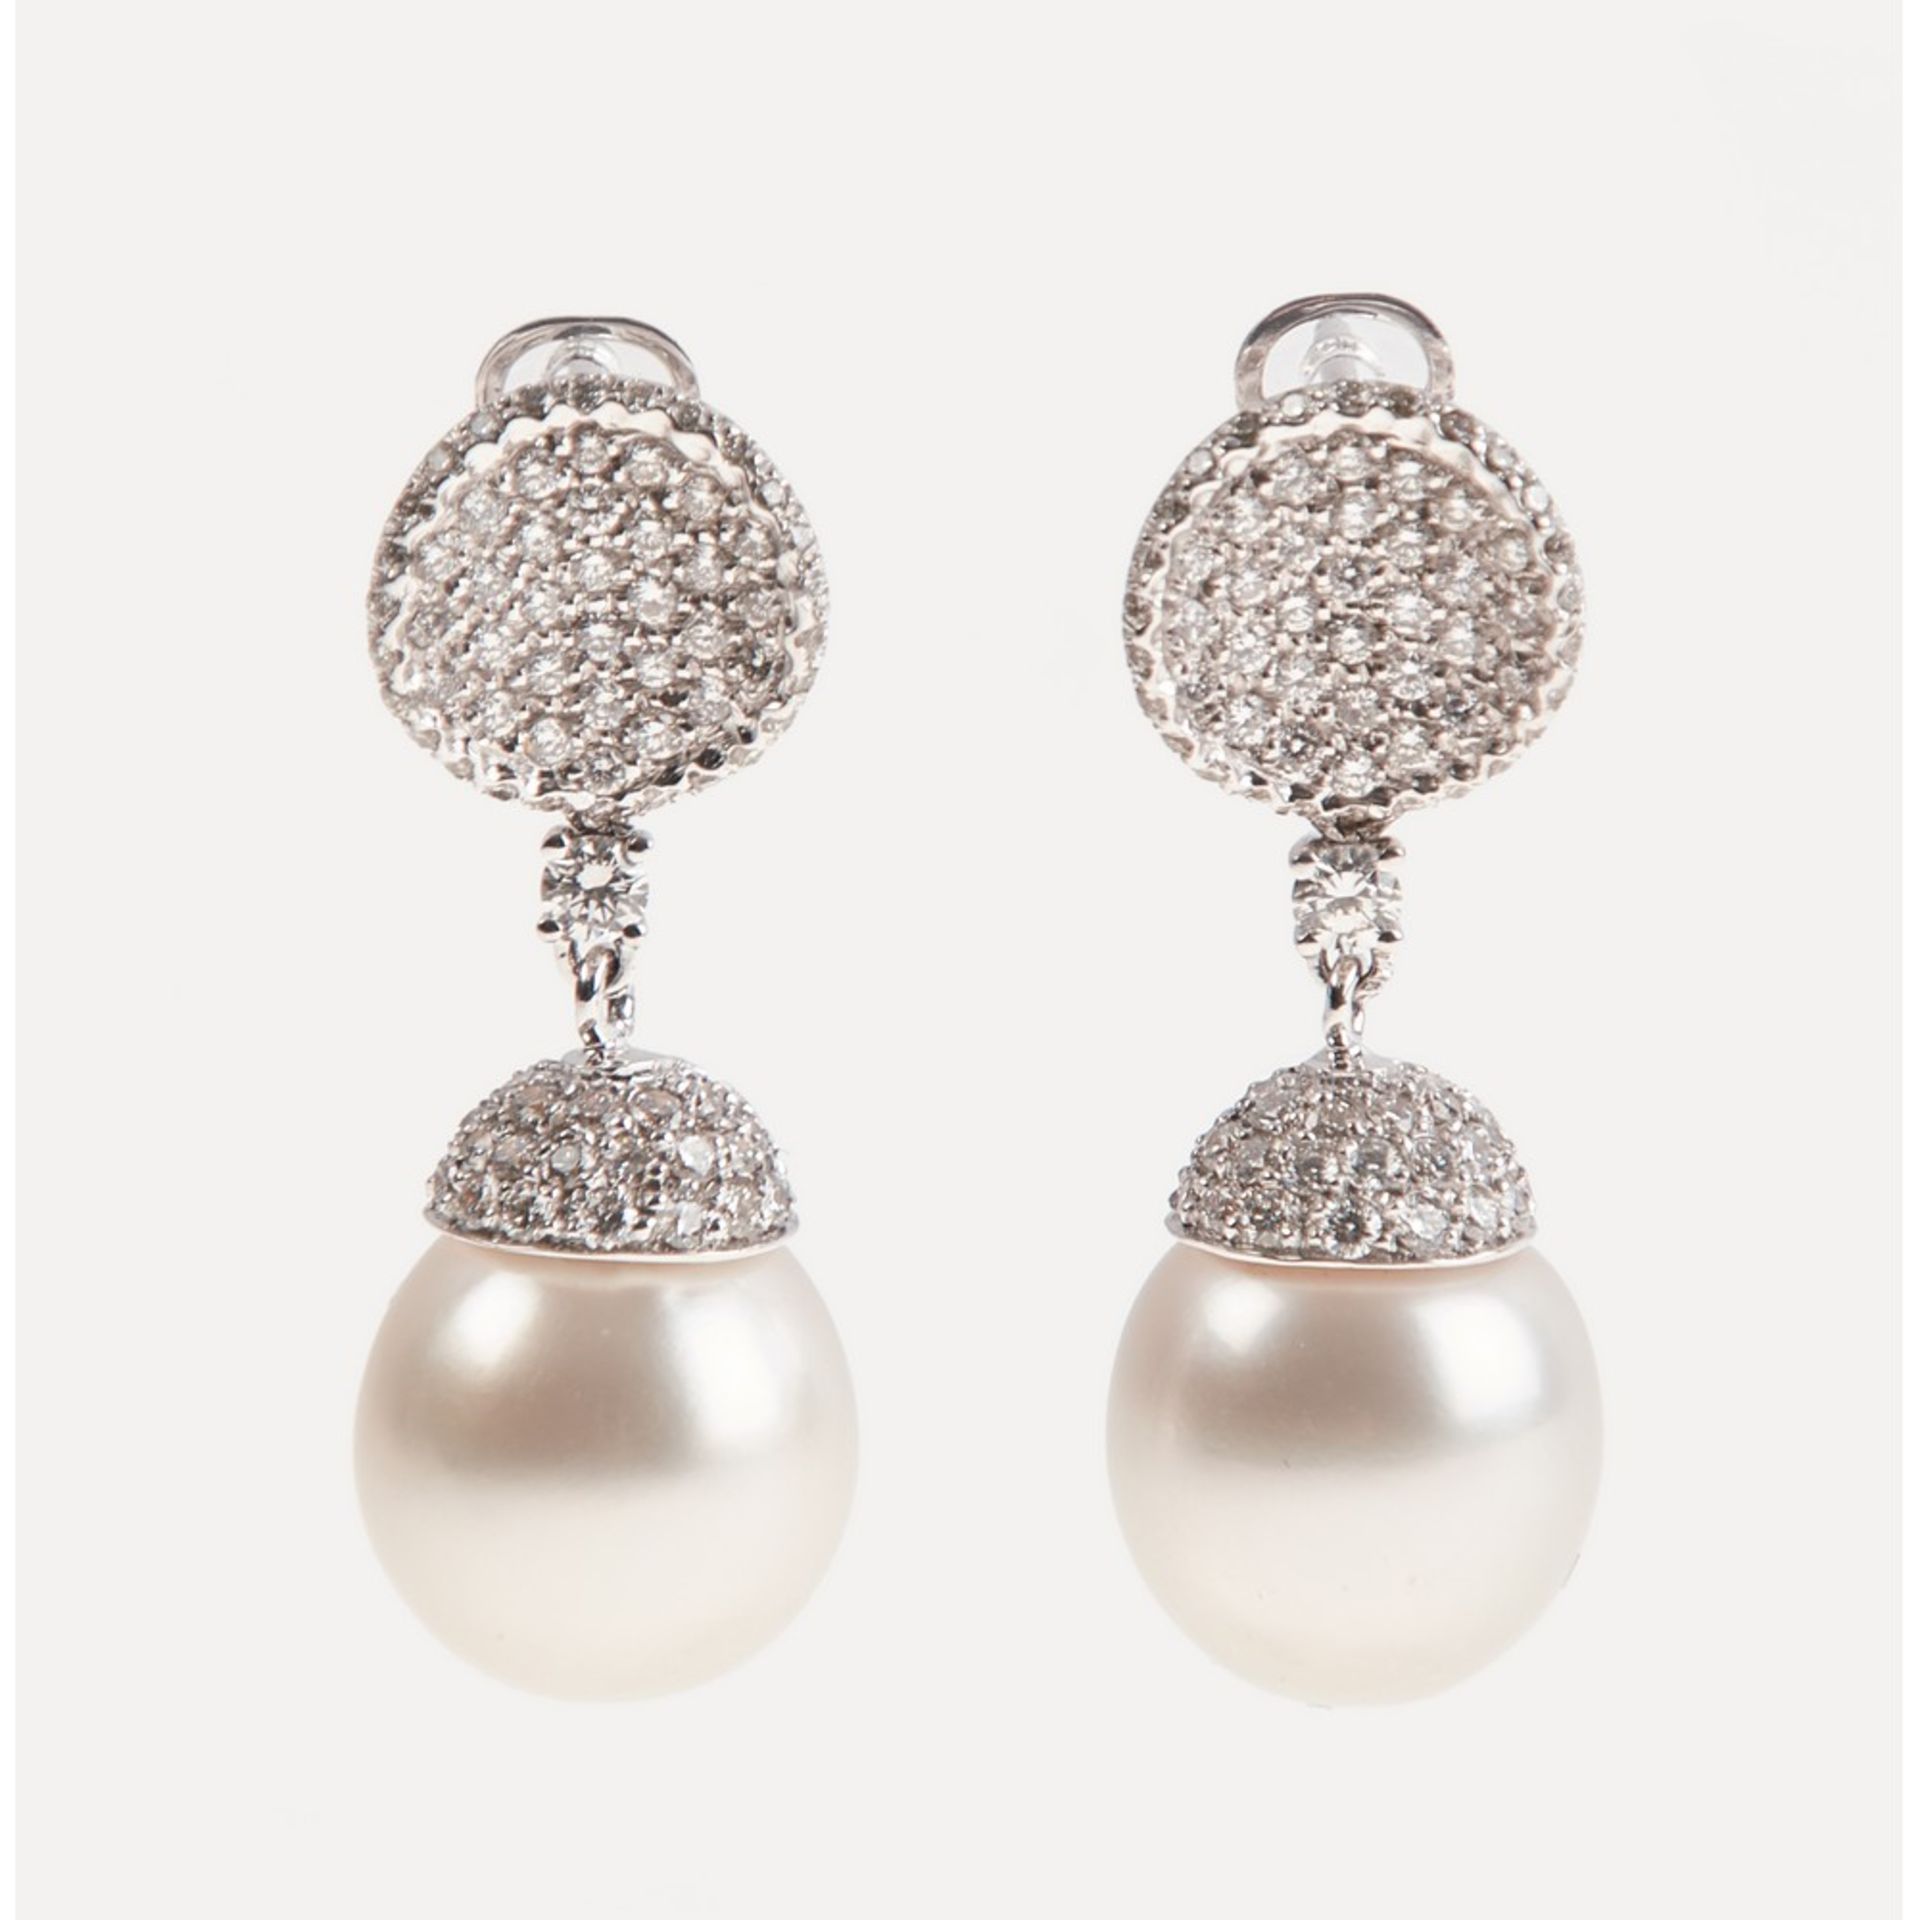 ORECCHINI in oro bianco 18 KT con perle australiane ct. 24,00 e diamanti taglio brillante ct. 2,